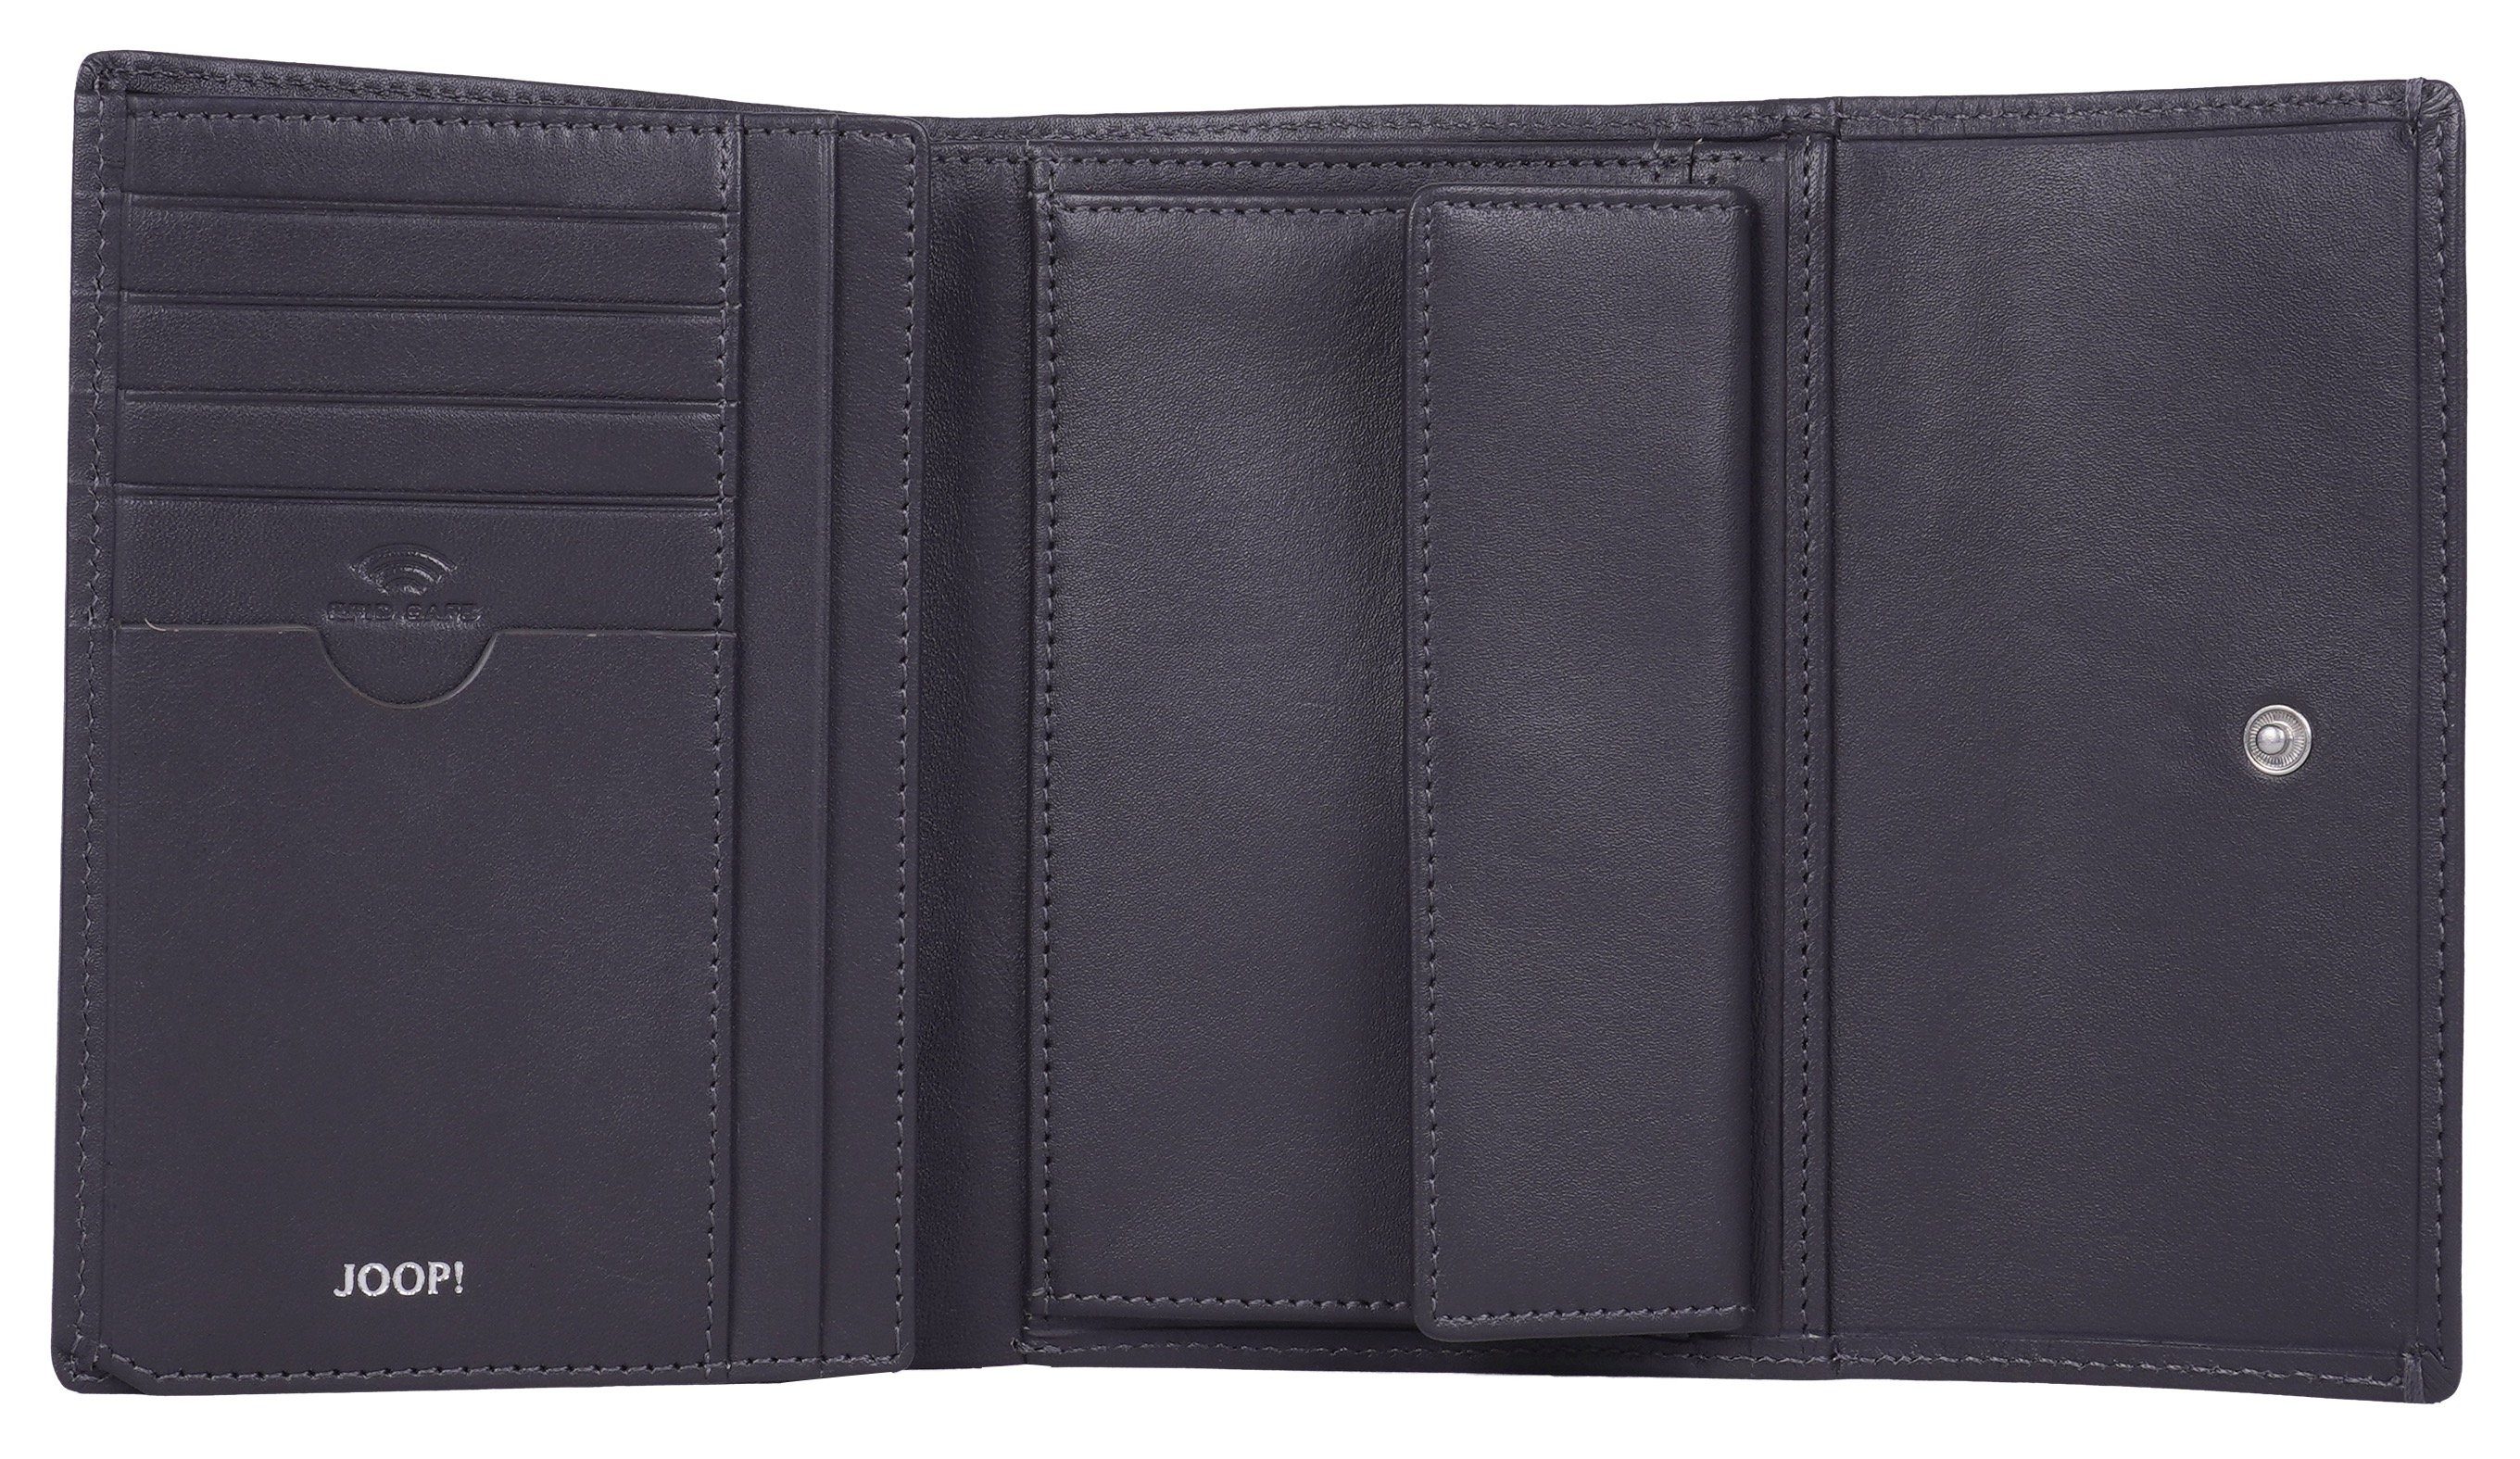 cosma Joop! Geldbörse 1.0 purse in mittelgrau mh10f, sofisticato schlichtem Design